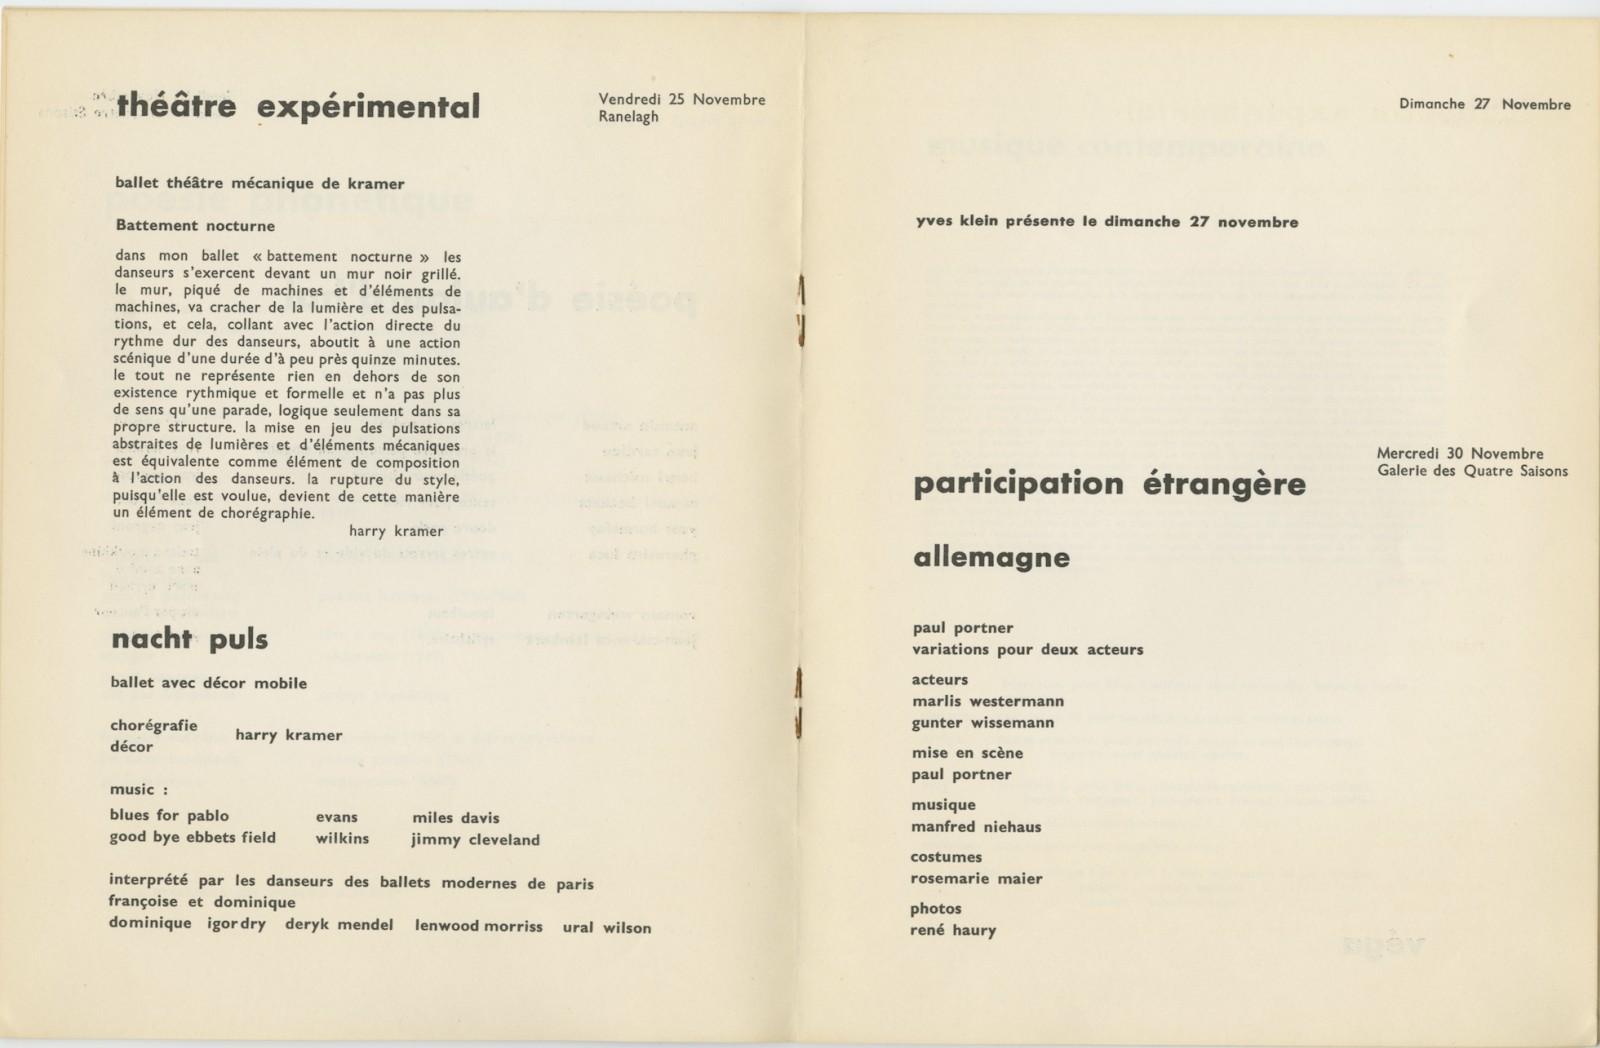 Catalogue of the "Festival d'art d'avant-garde", Porte de Versailles, Paris, 1960